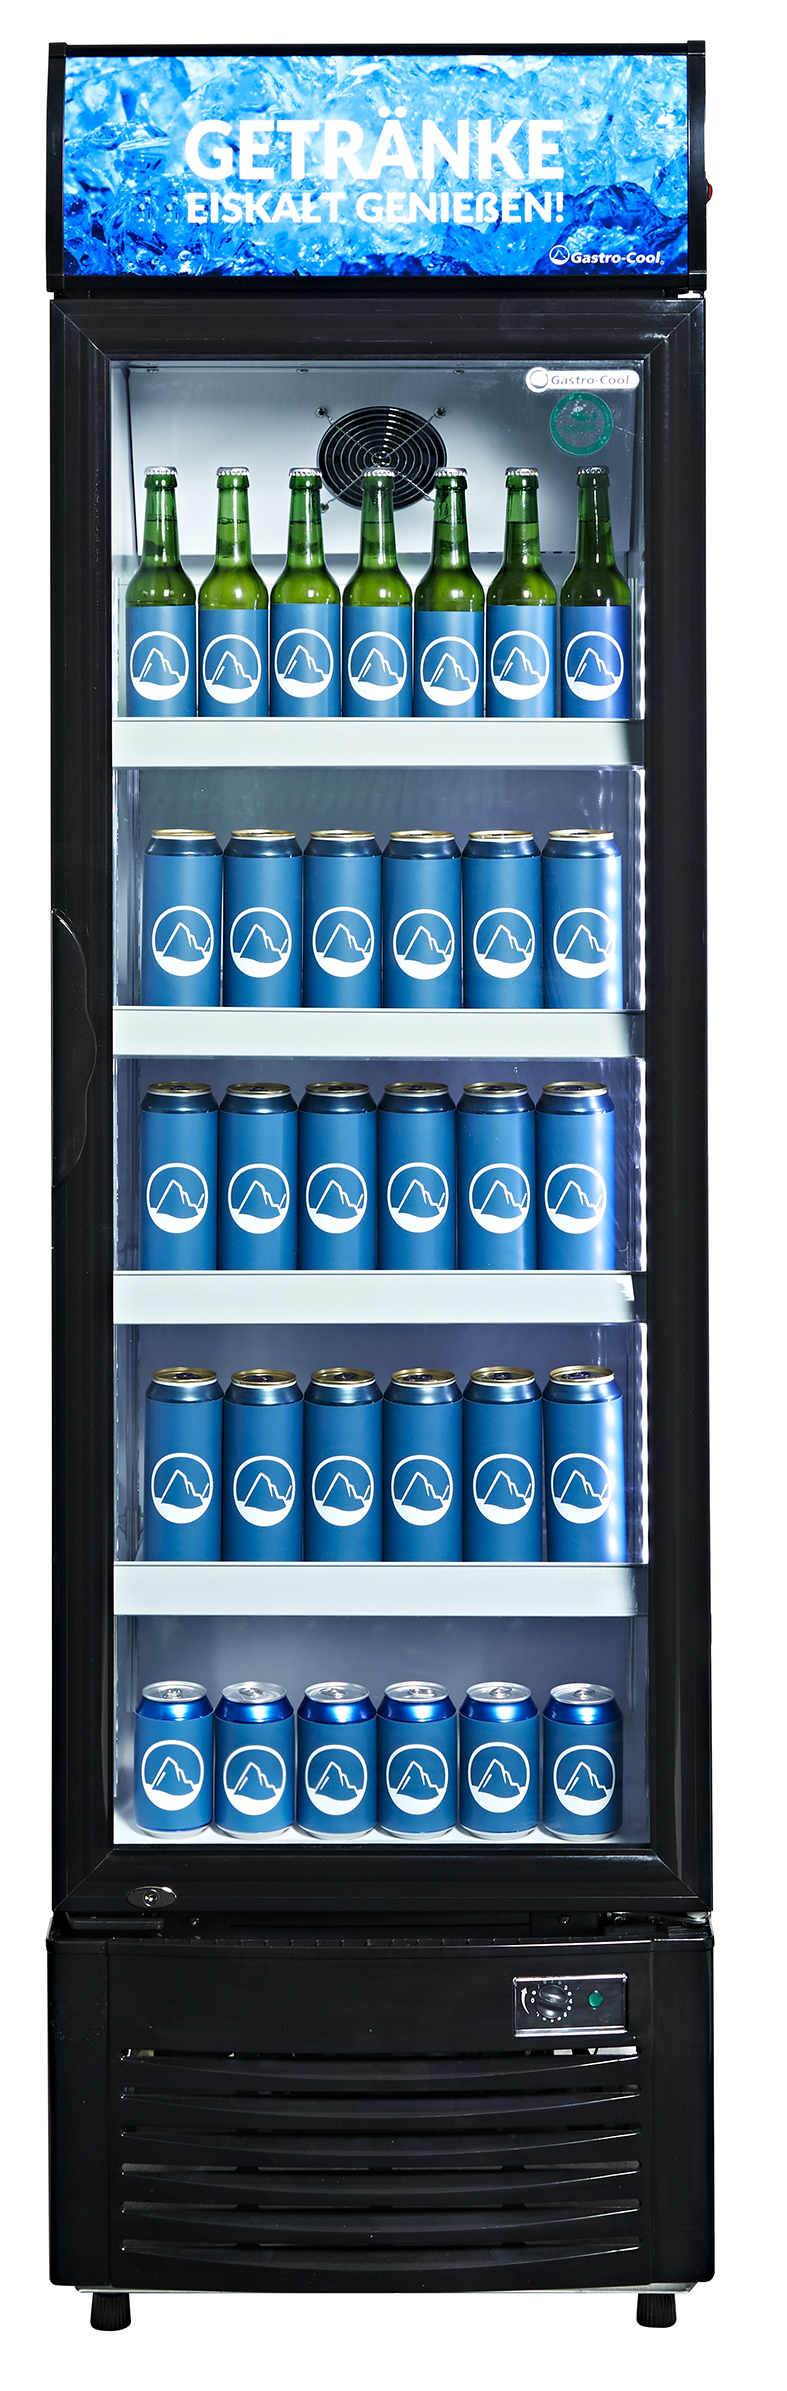 Gastro-Cool - Getränkekühlschrank mit Werbedisplay - DC280 - frontal gefüllt